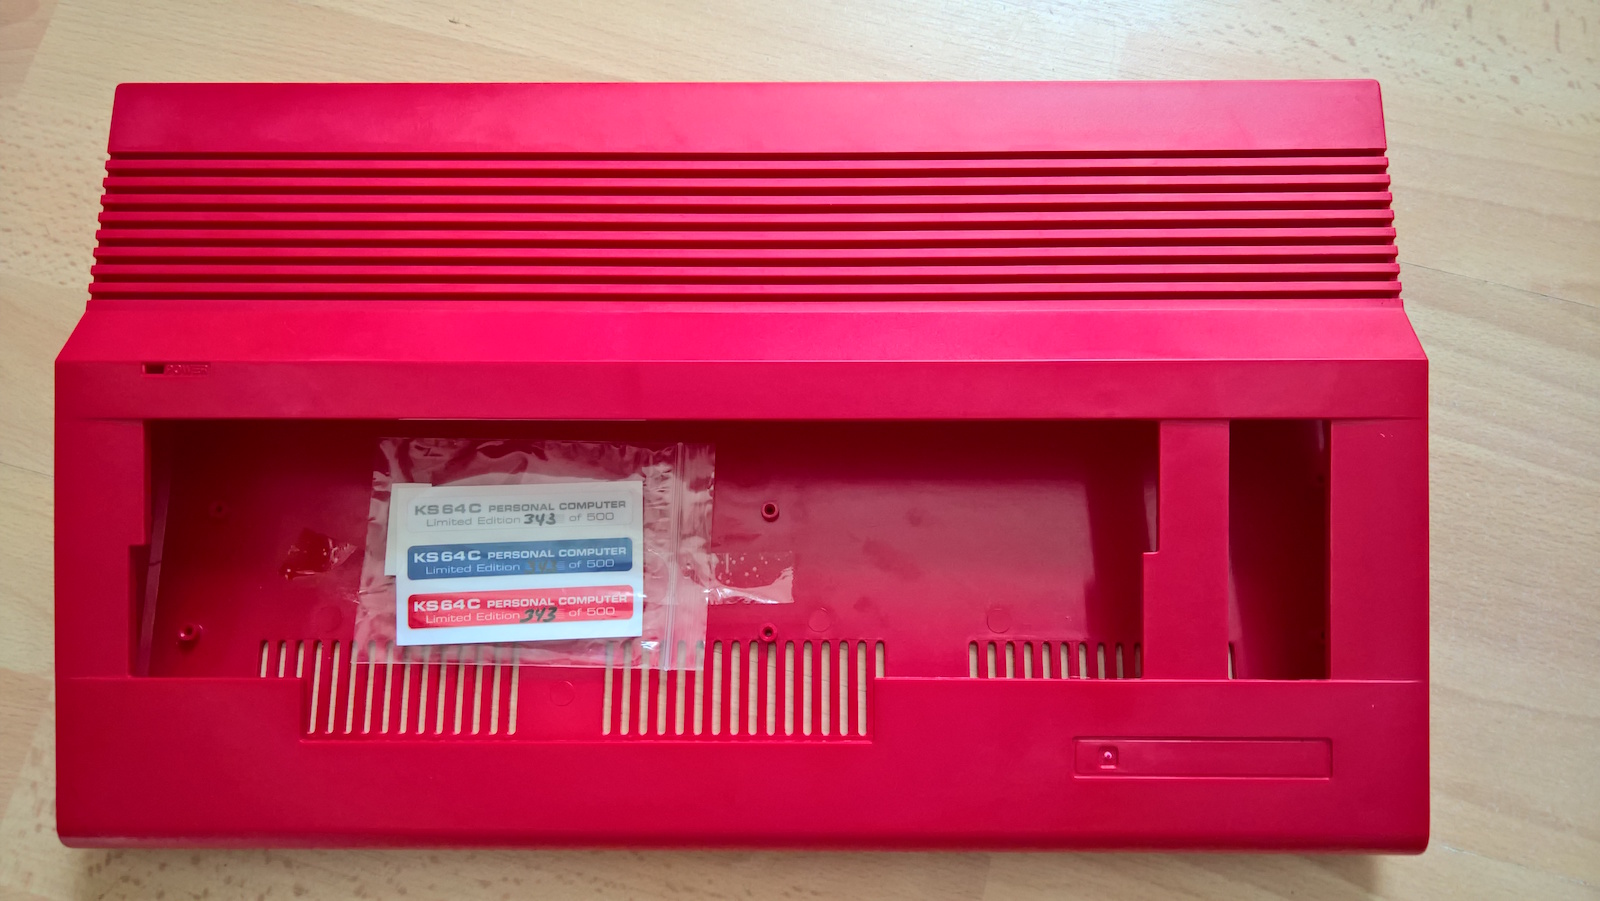 Limitiertes ks64 Case in rot, Nummer 343 von 500. (Bild: Stefan Vogt)